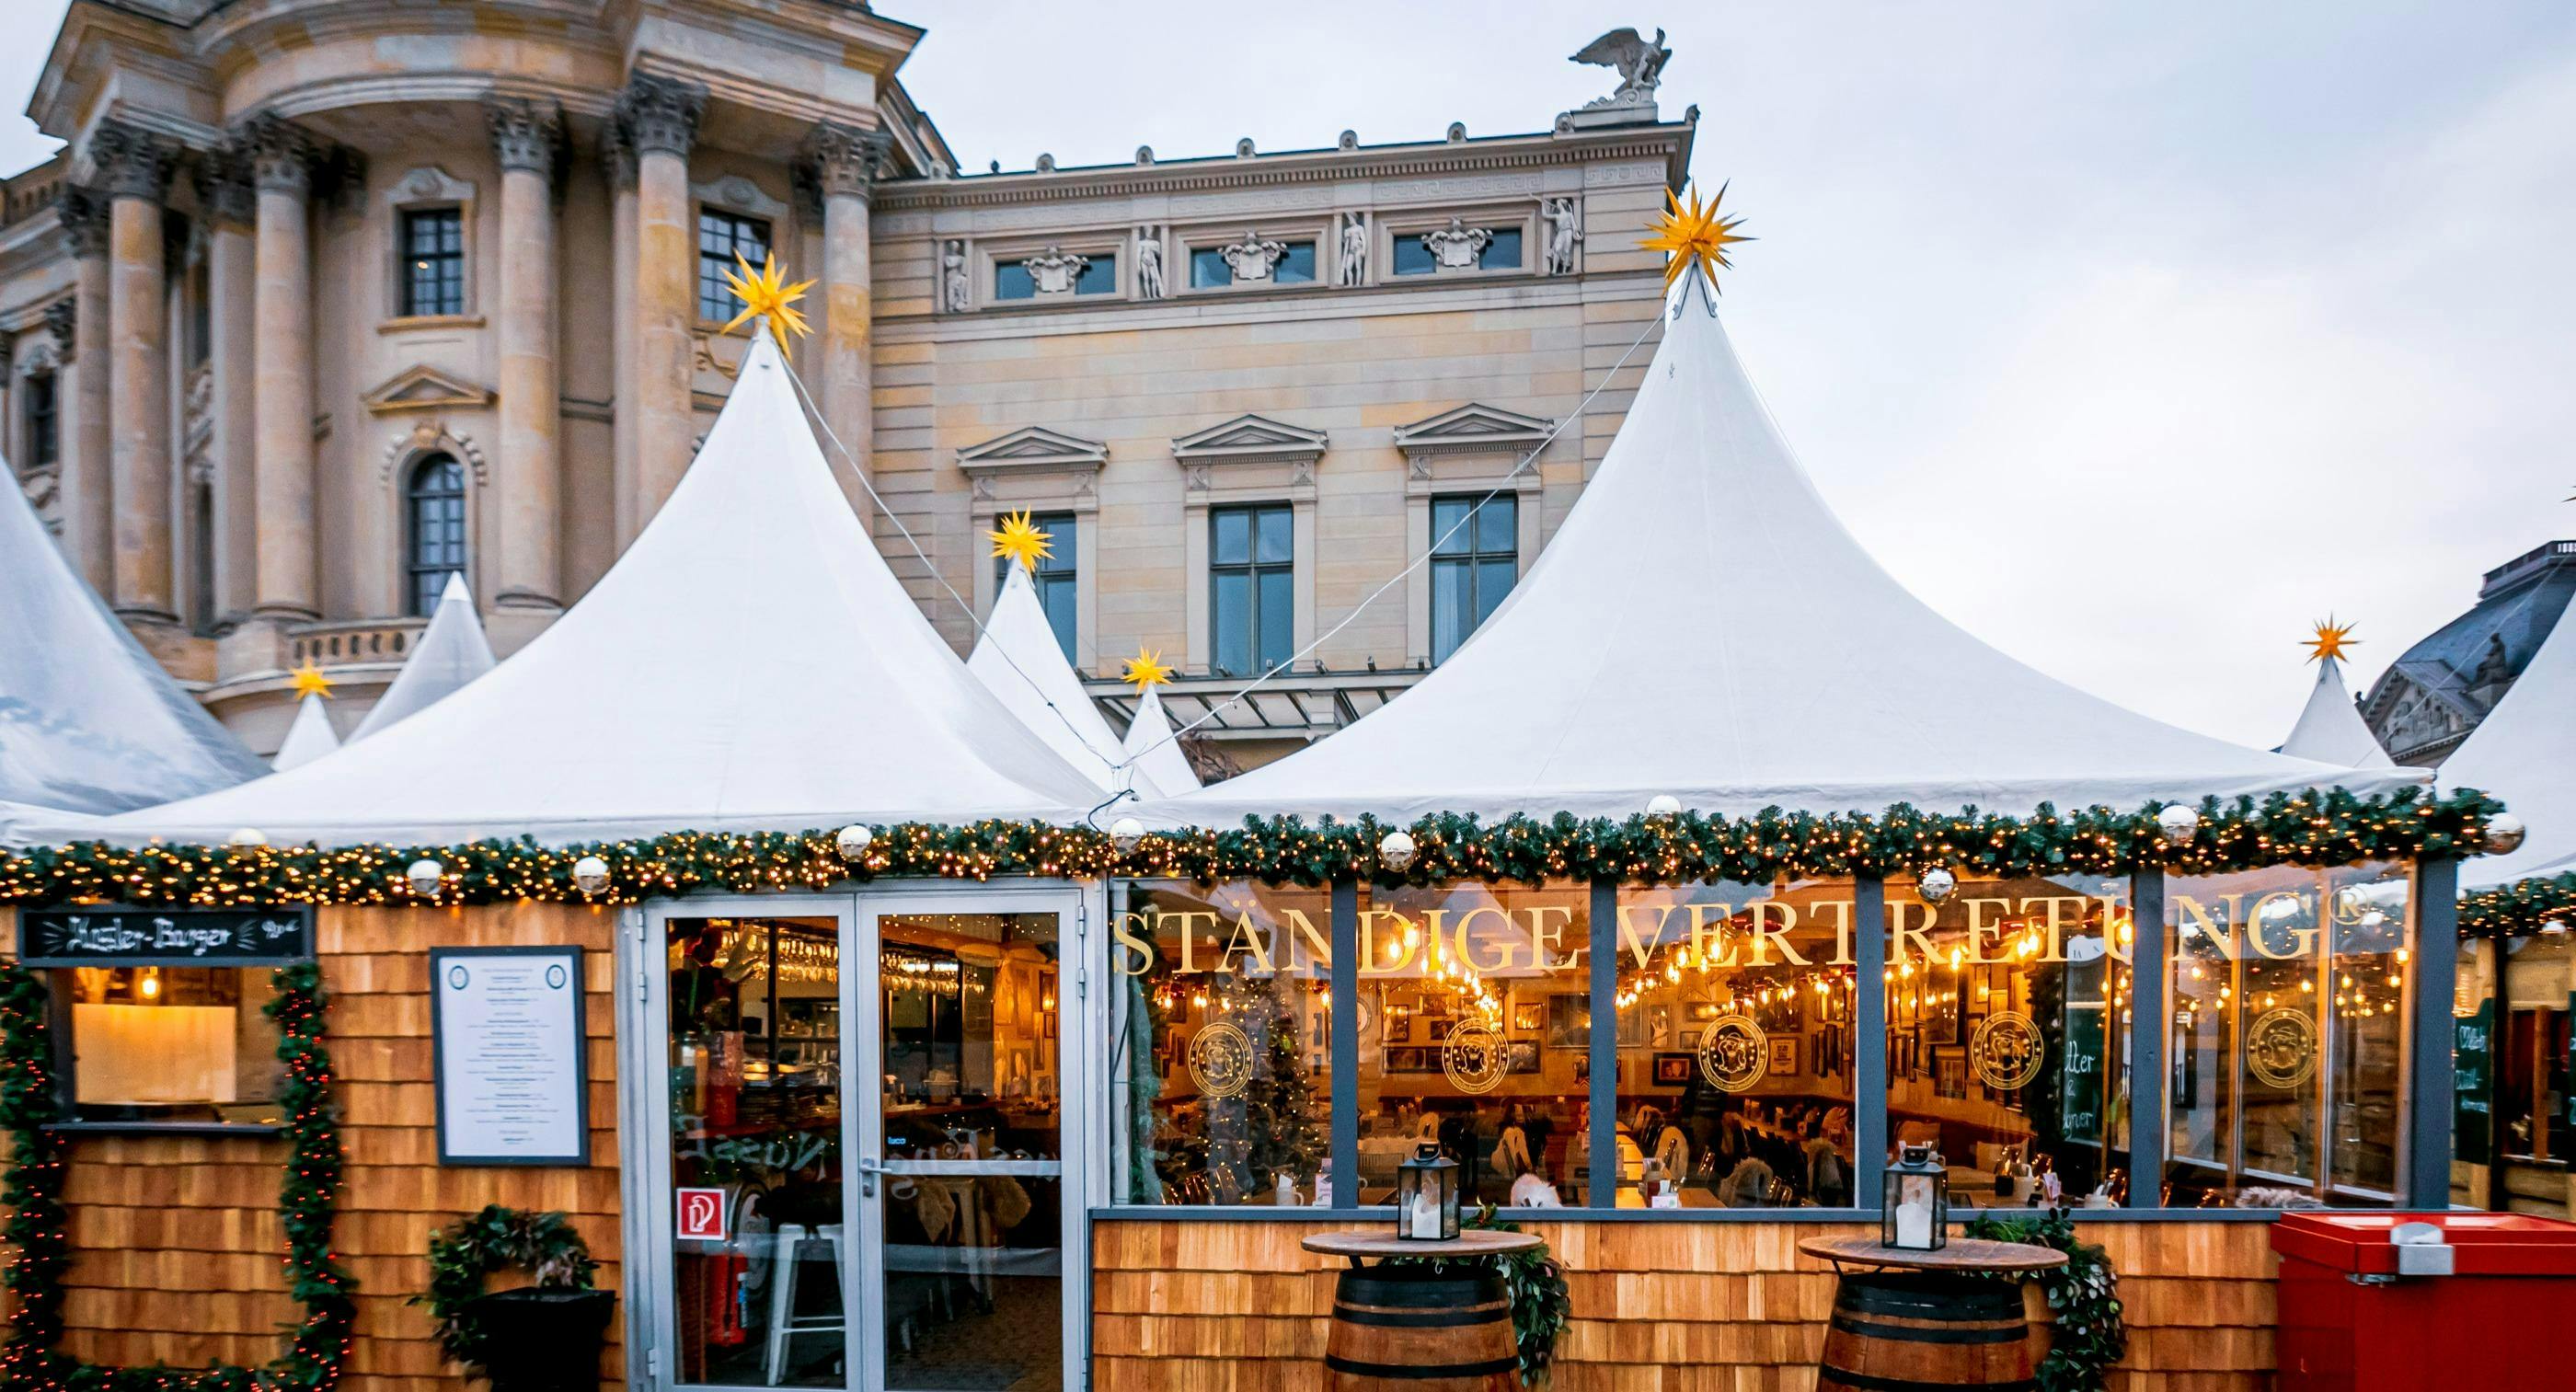 Photo of restaurant Ständige Weihnachtsvertretung in Mitte, Berlin